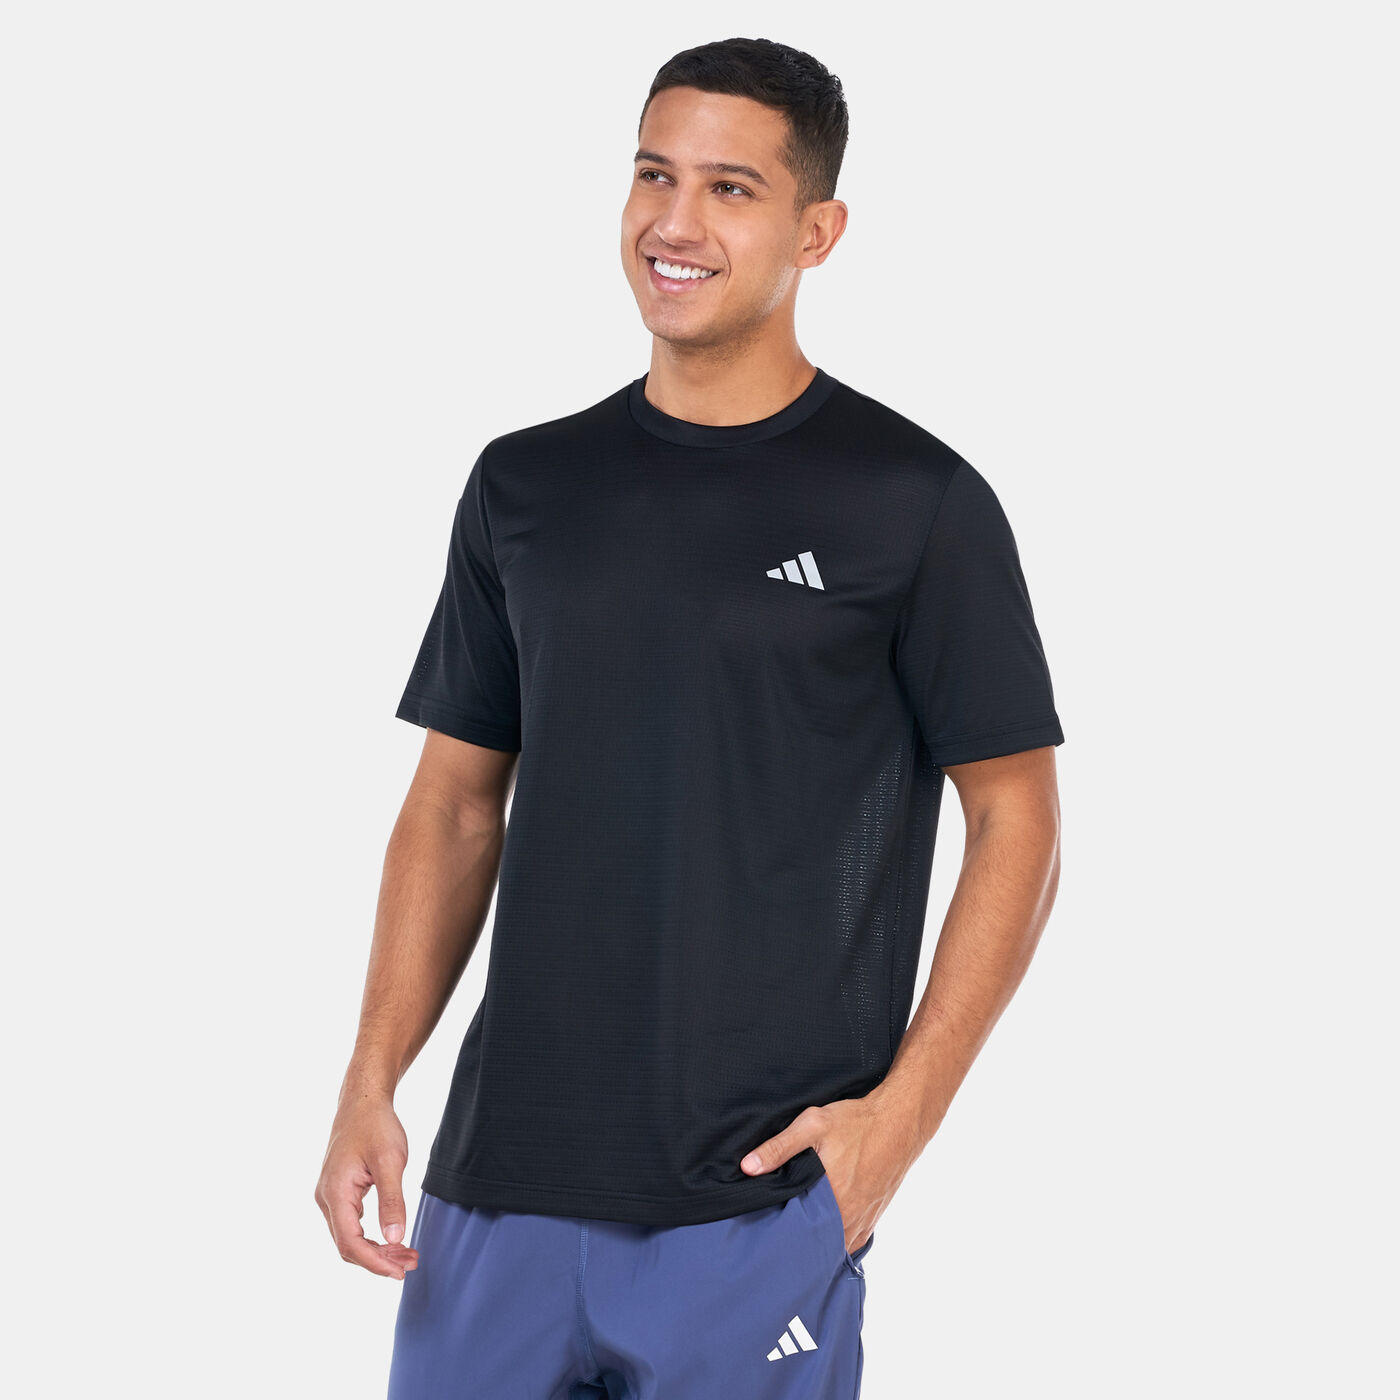 Men's Adizero Graphic Running T-Shirt